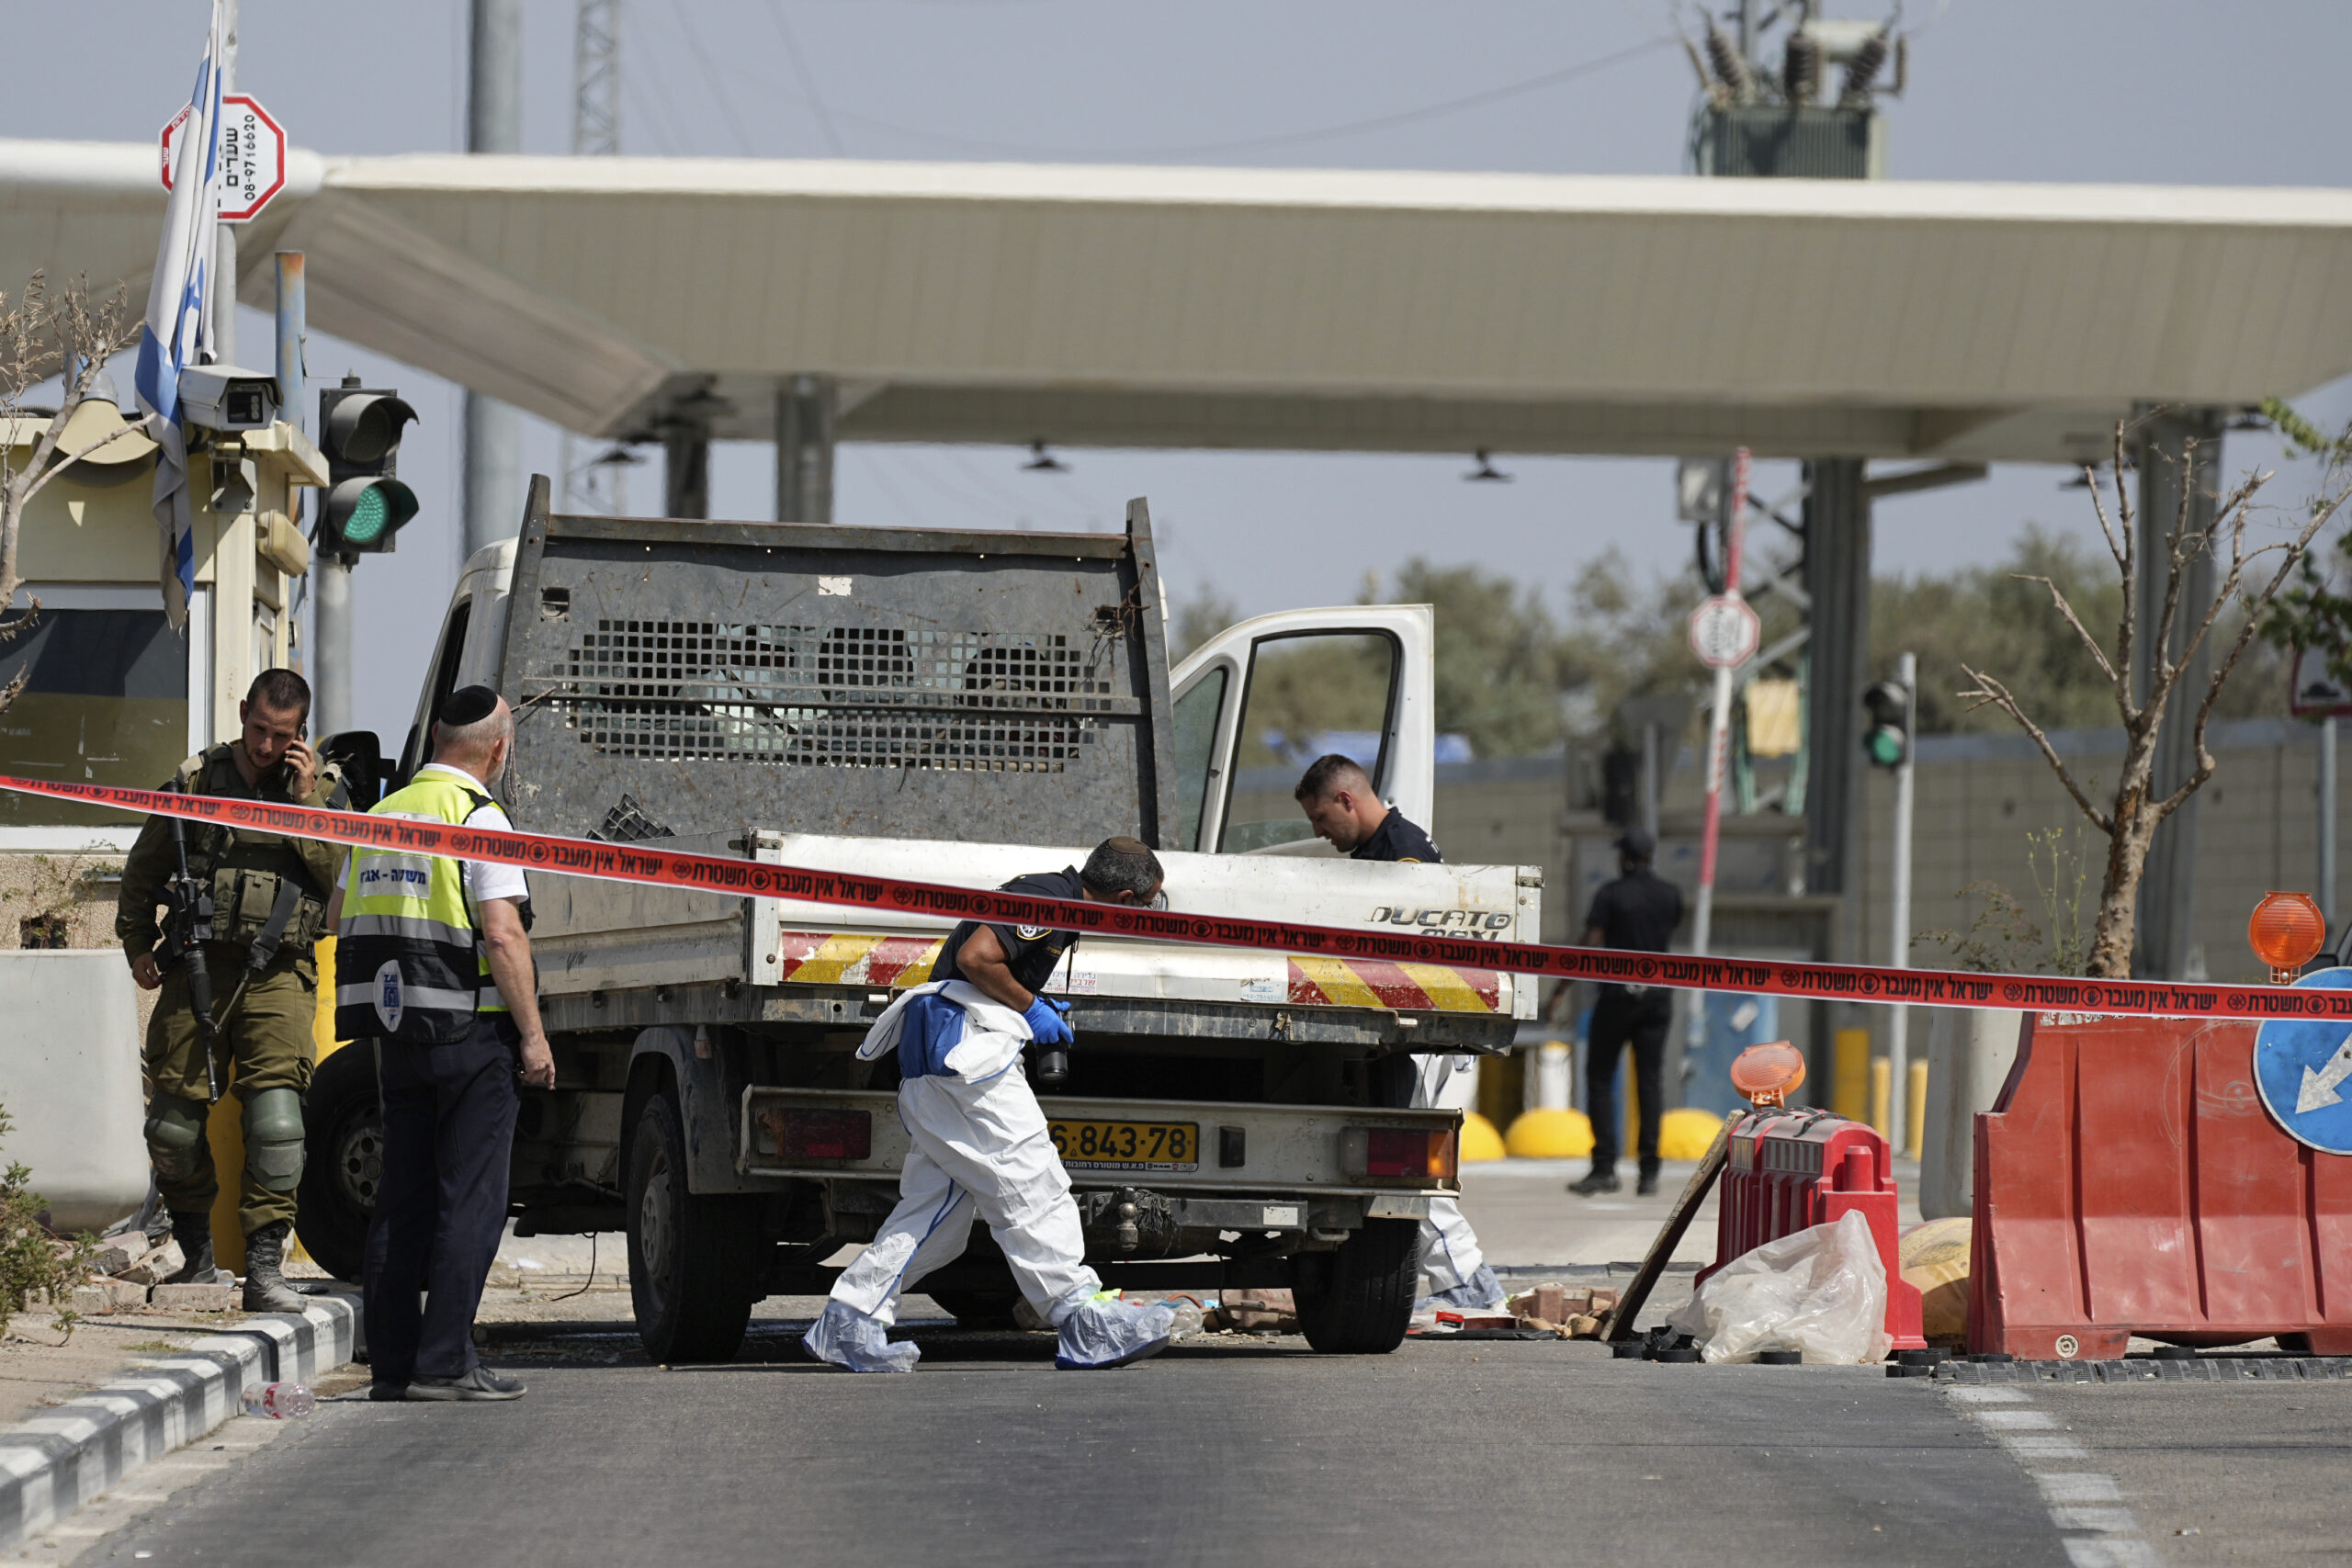 Παλαιστίνη: Παλαιστίνιος οδηγός φορτηγού, που έπεσε με το όχημά του σε σημείο ελέγχου στη Δυτική Όχθη σκοτώνοντας έναν Ισραηλινό στρατιώτη – Πυροβολήθηκε και σκοτώθηκε